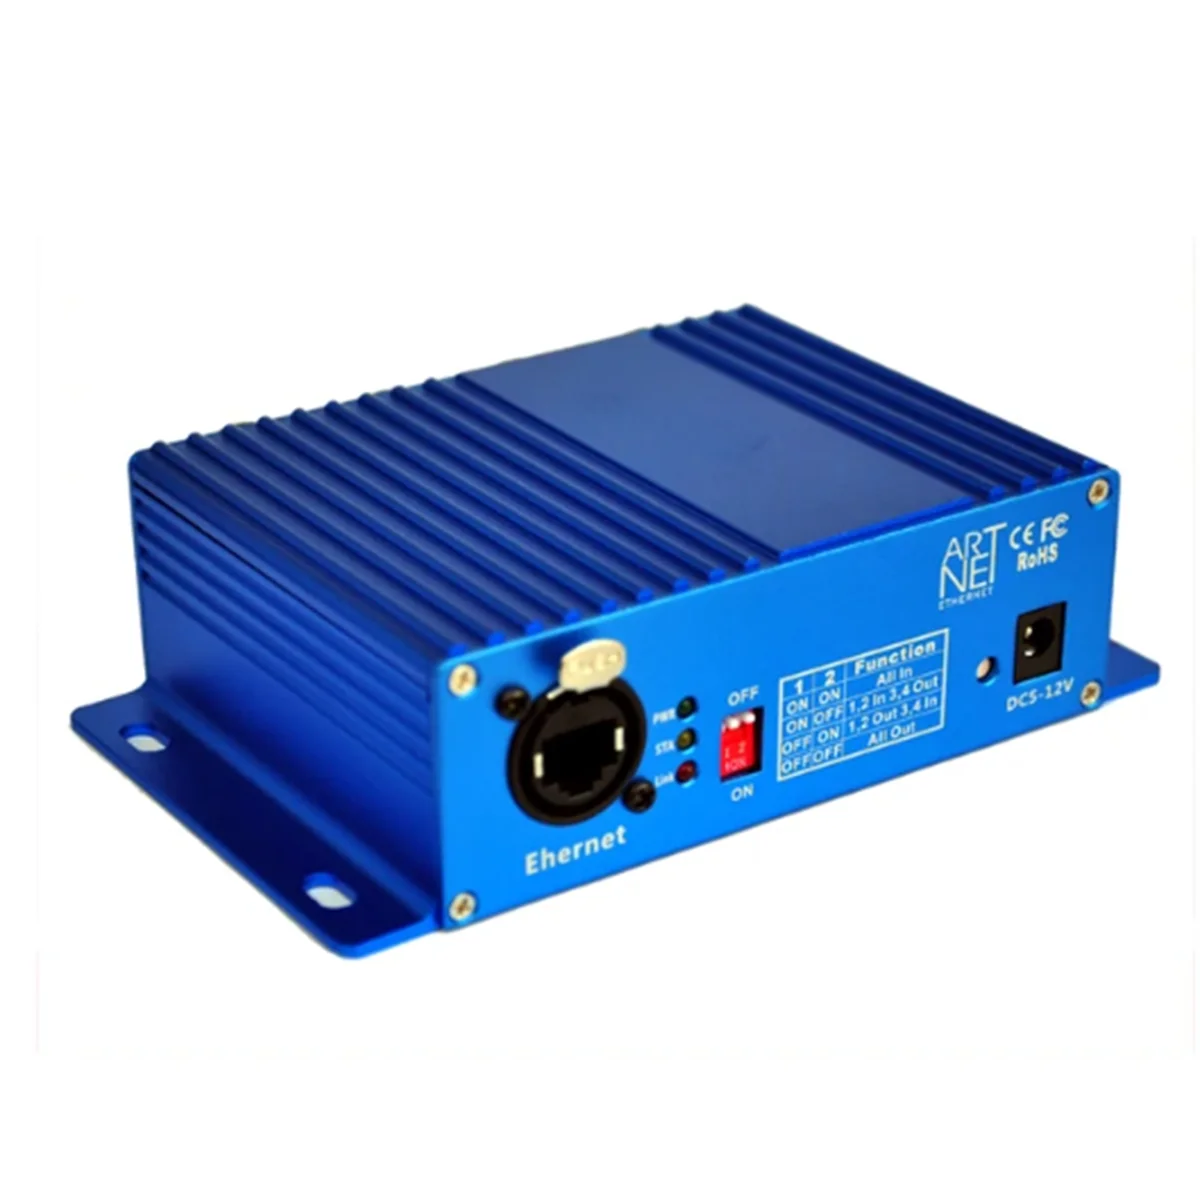 ArtNet-DMX 4 Четырехполосный ArtNet DMX Двунаправленный конвертер с 4 гнездами 3PIN XLR для преобразования сигналов Ethernet EU Plug